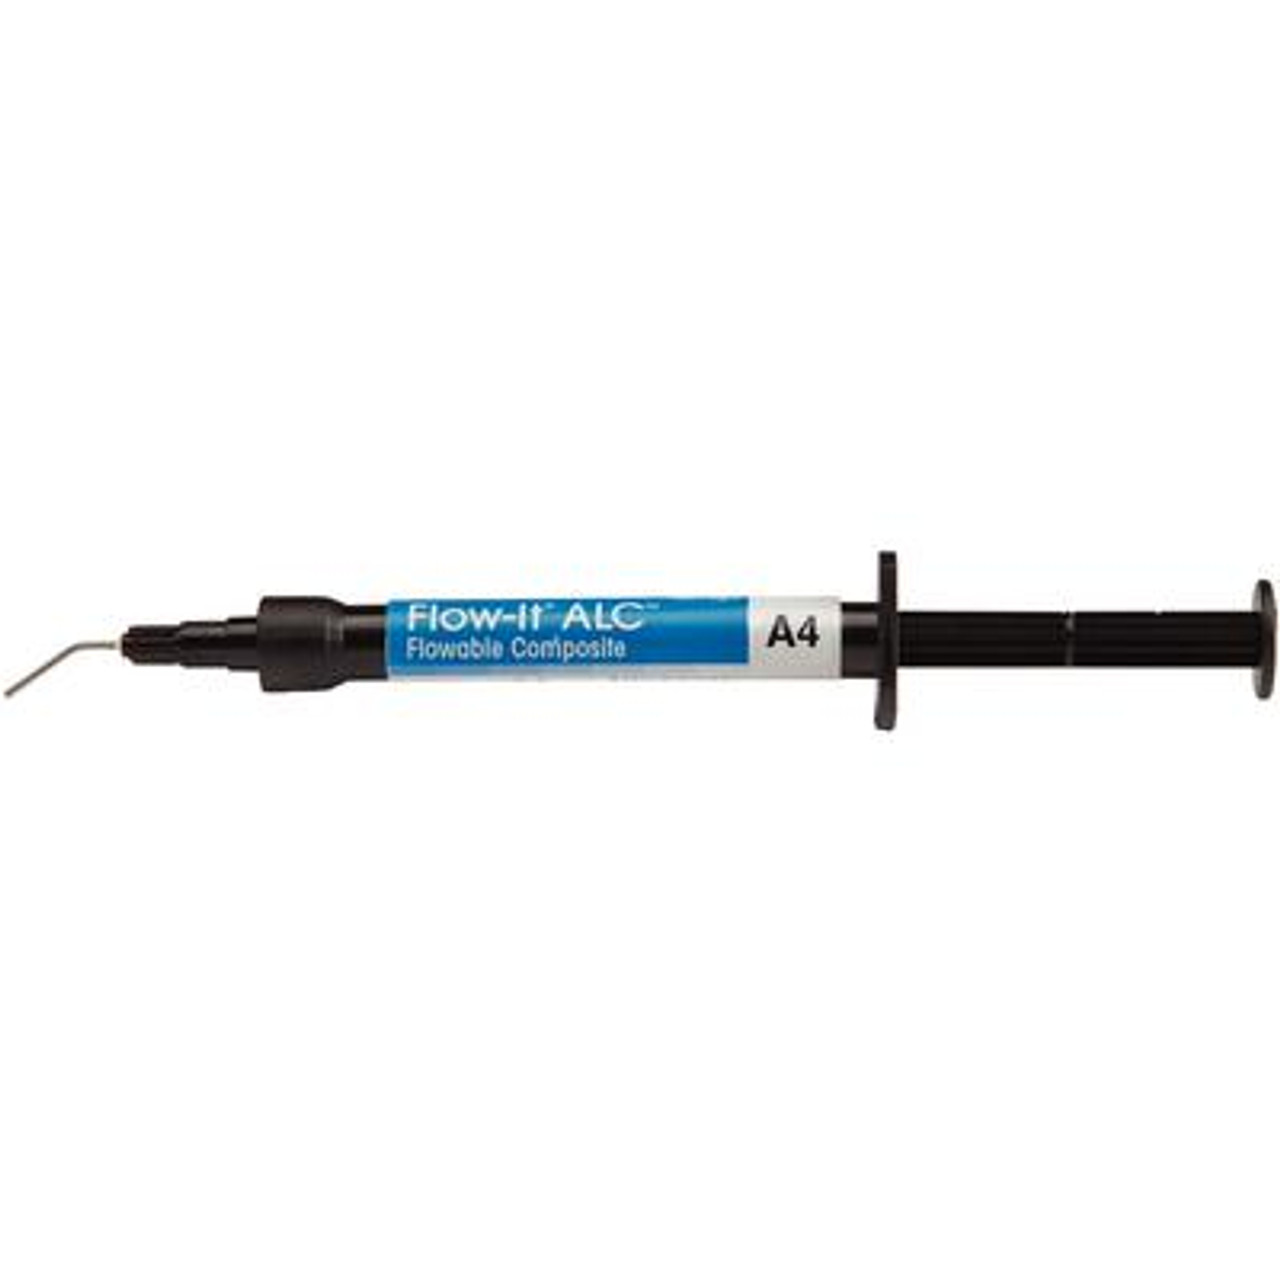 Pentron Flow-It ALC Flowable Composite A4 Syringe 4g & Tips